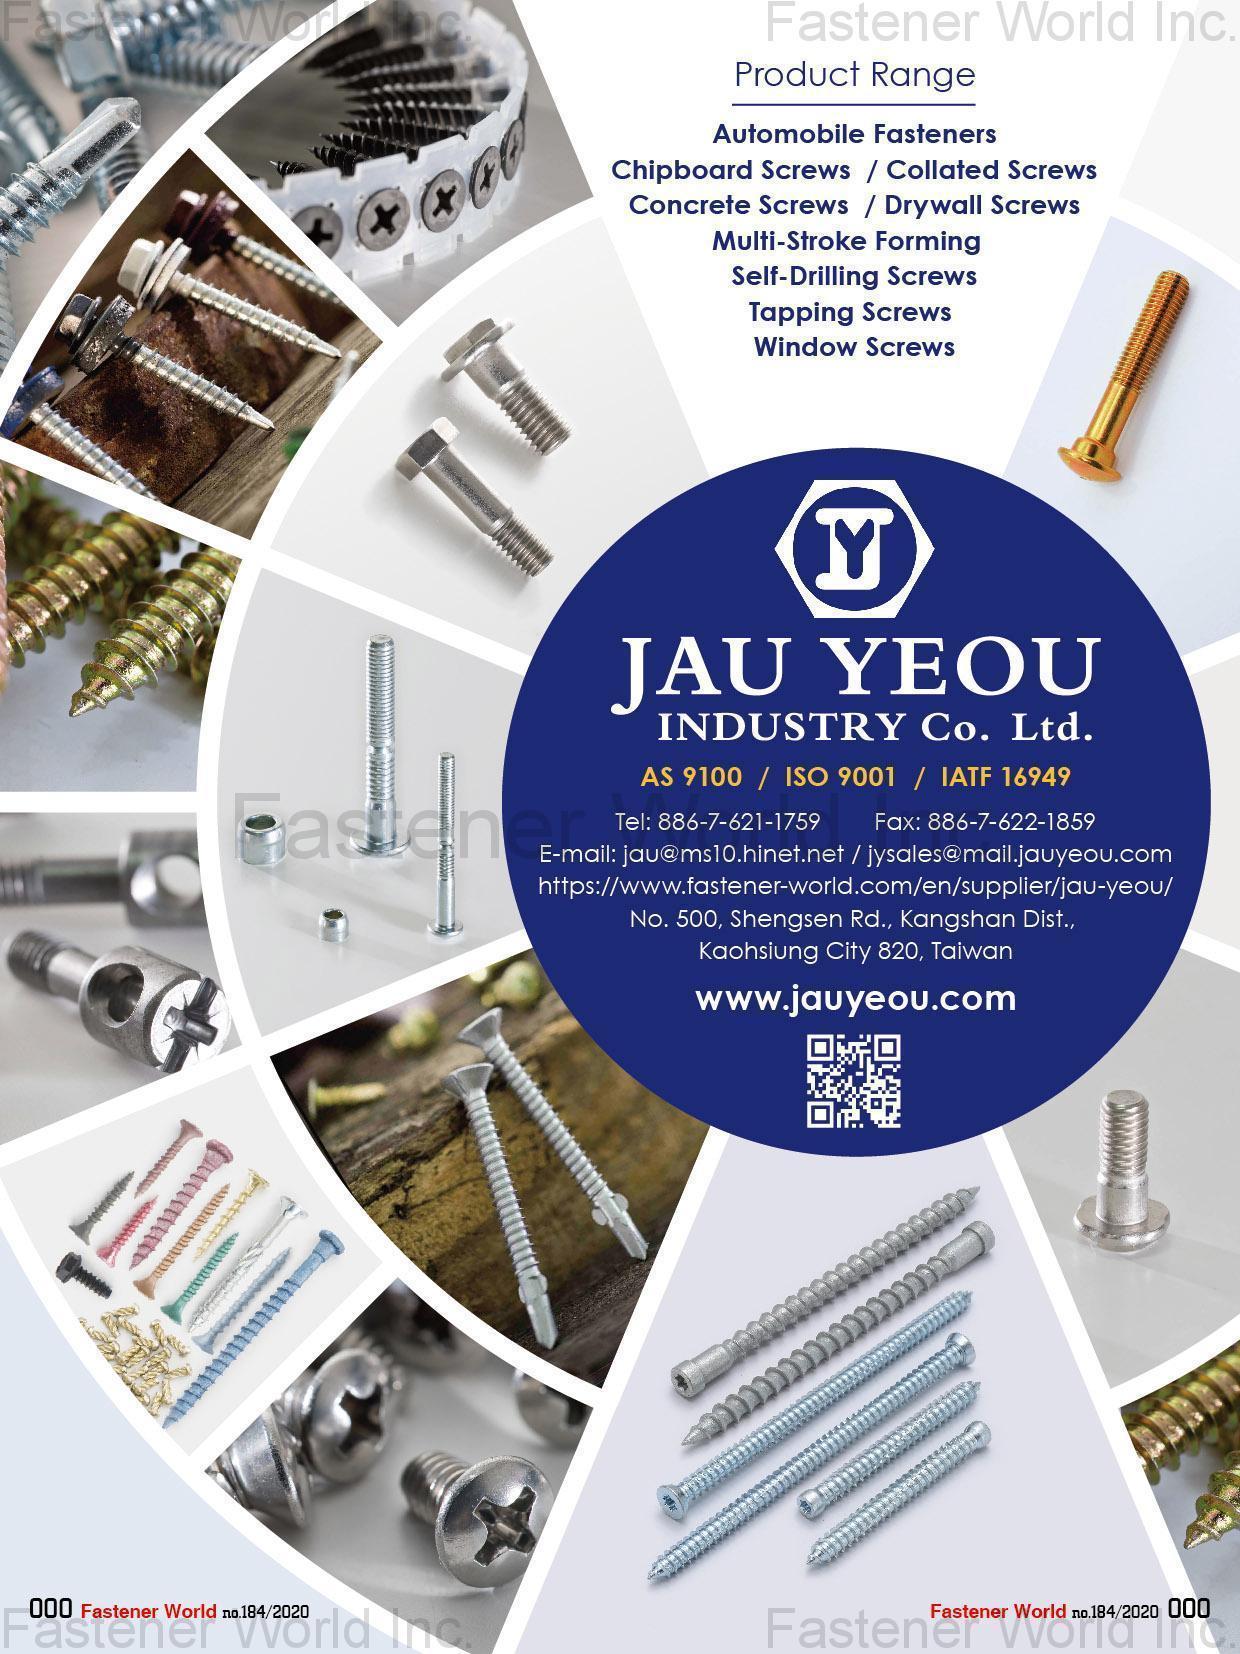 JAU YEOU INDUSTRY CO., LTD. , Automobile Fasteners, Chipboard Screws, Collated Screws, Drywall Screws, Multi-Storke Forming, Self-Drilling Screws, Tapping Screws, Window Screws